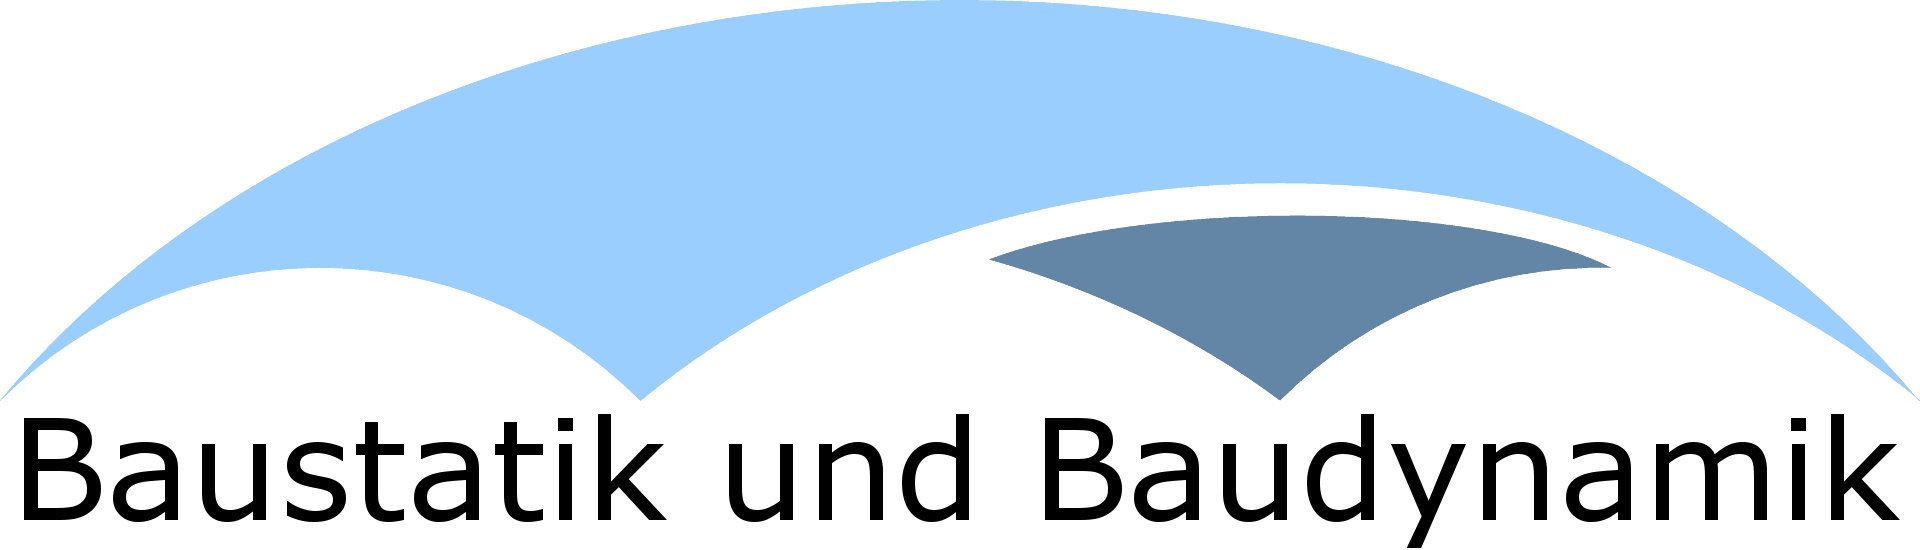 Logo des Instituts für Baustatik und Baudynamik